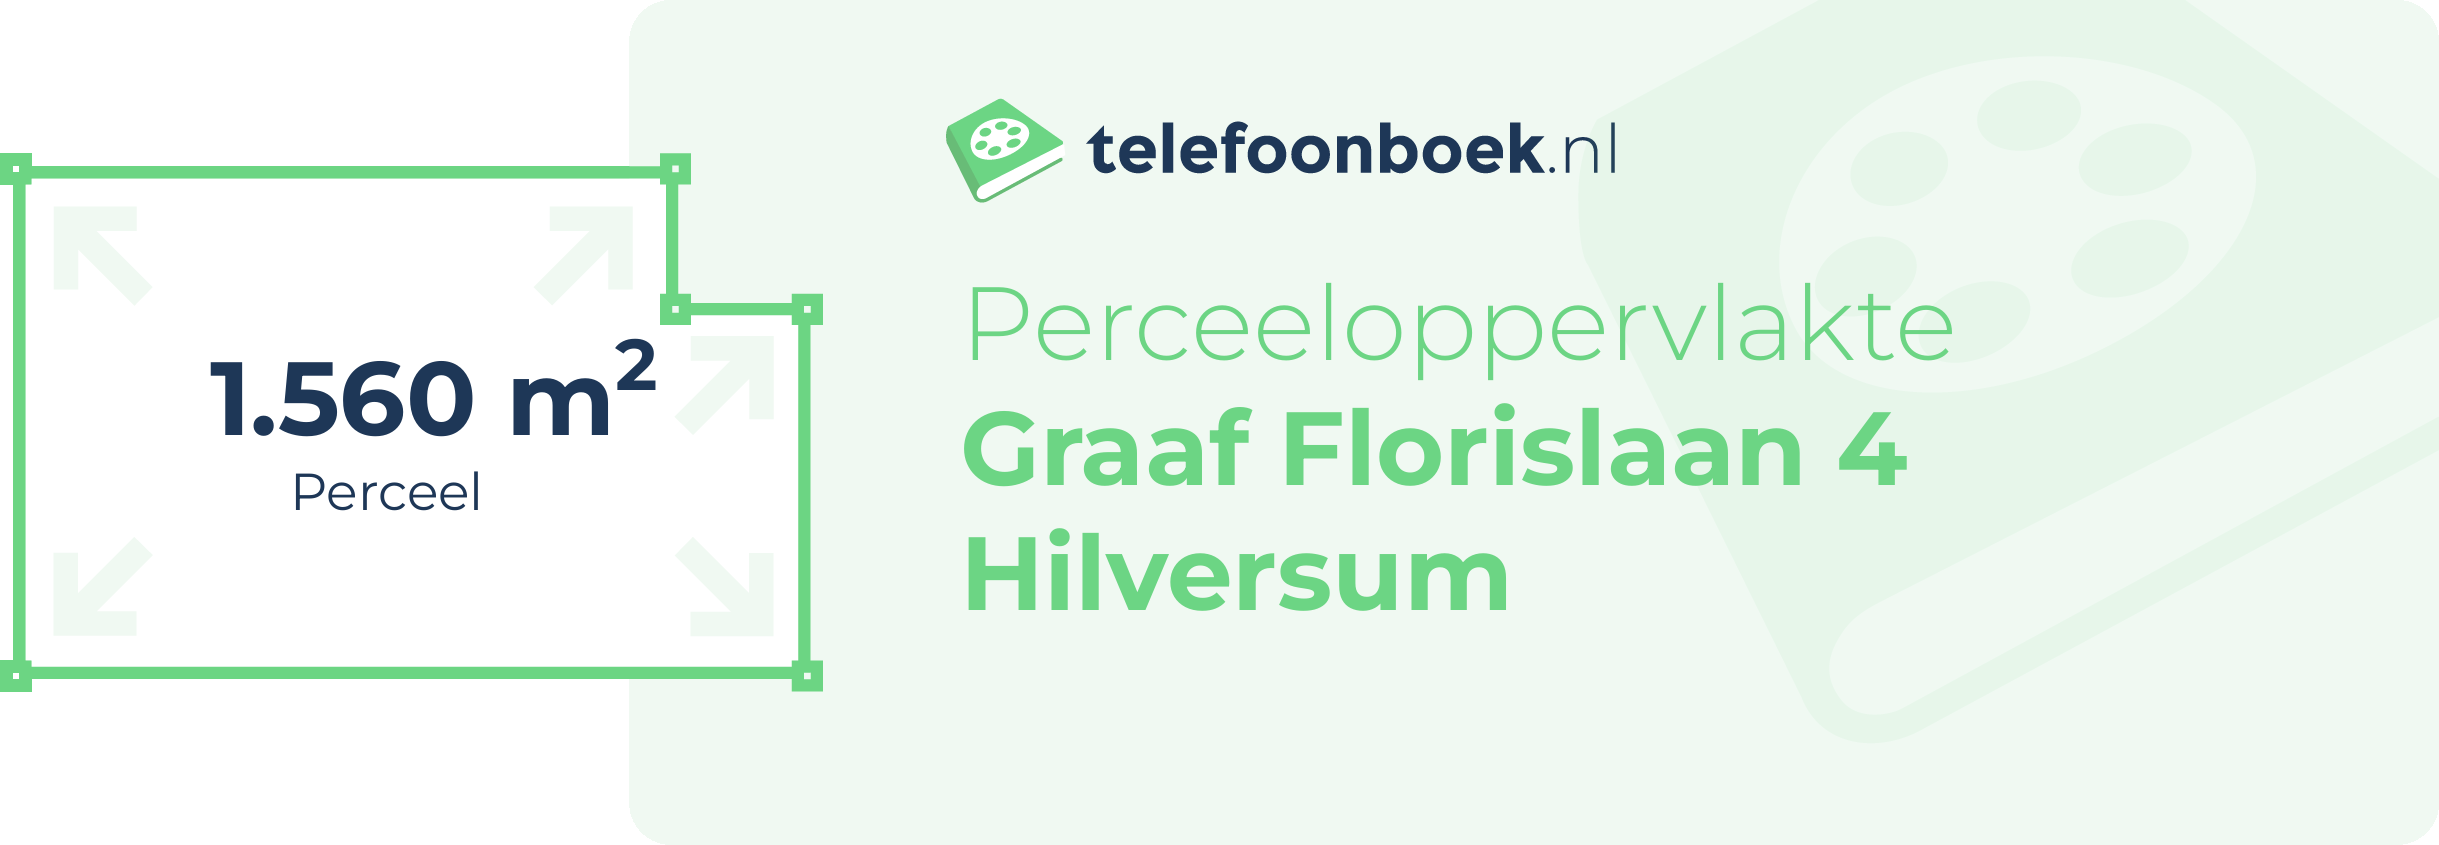 Perceeloppervlakte Graaf Florislaan 4 Hilversum